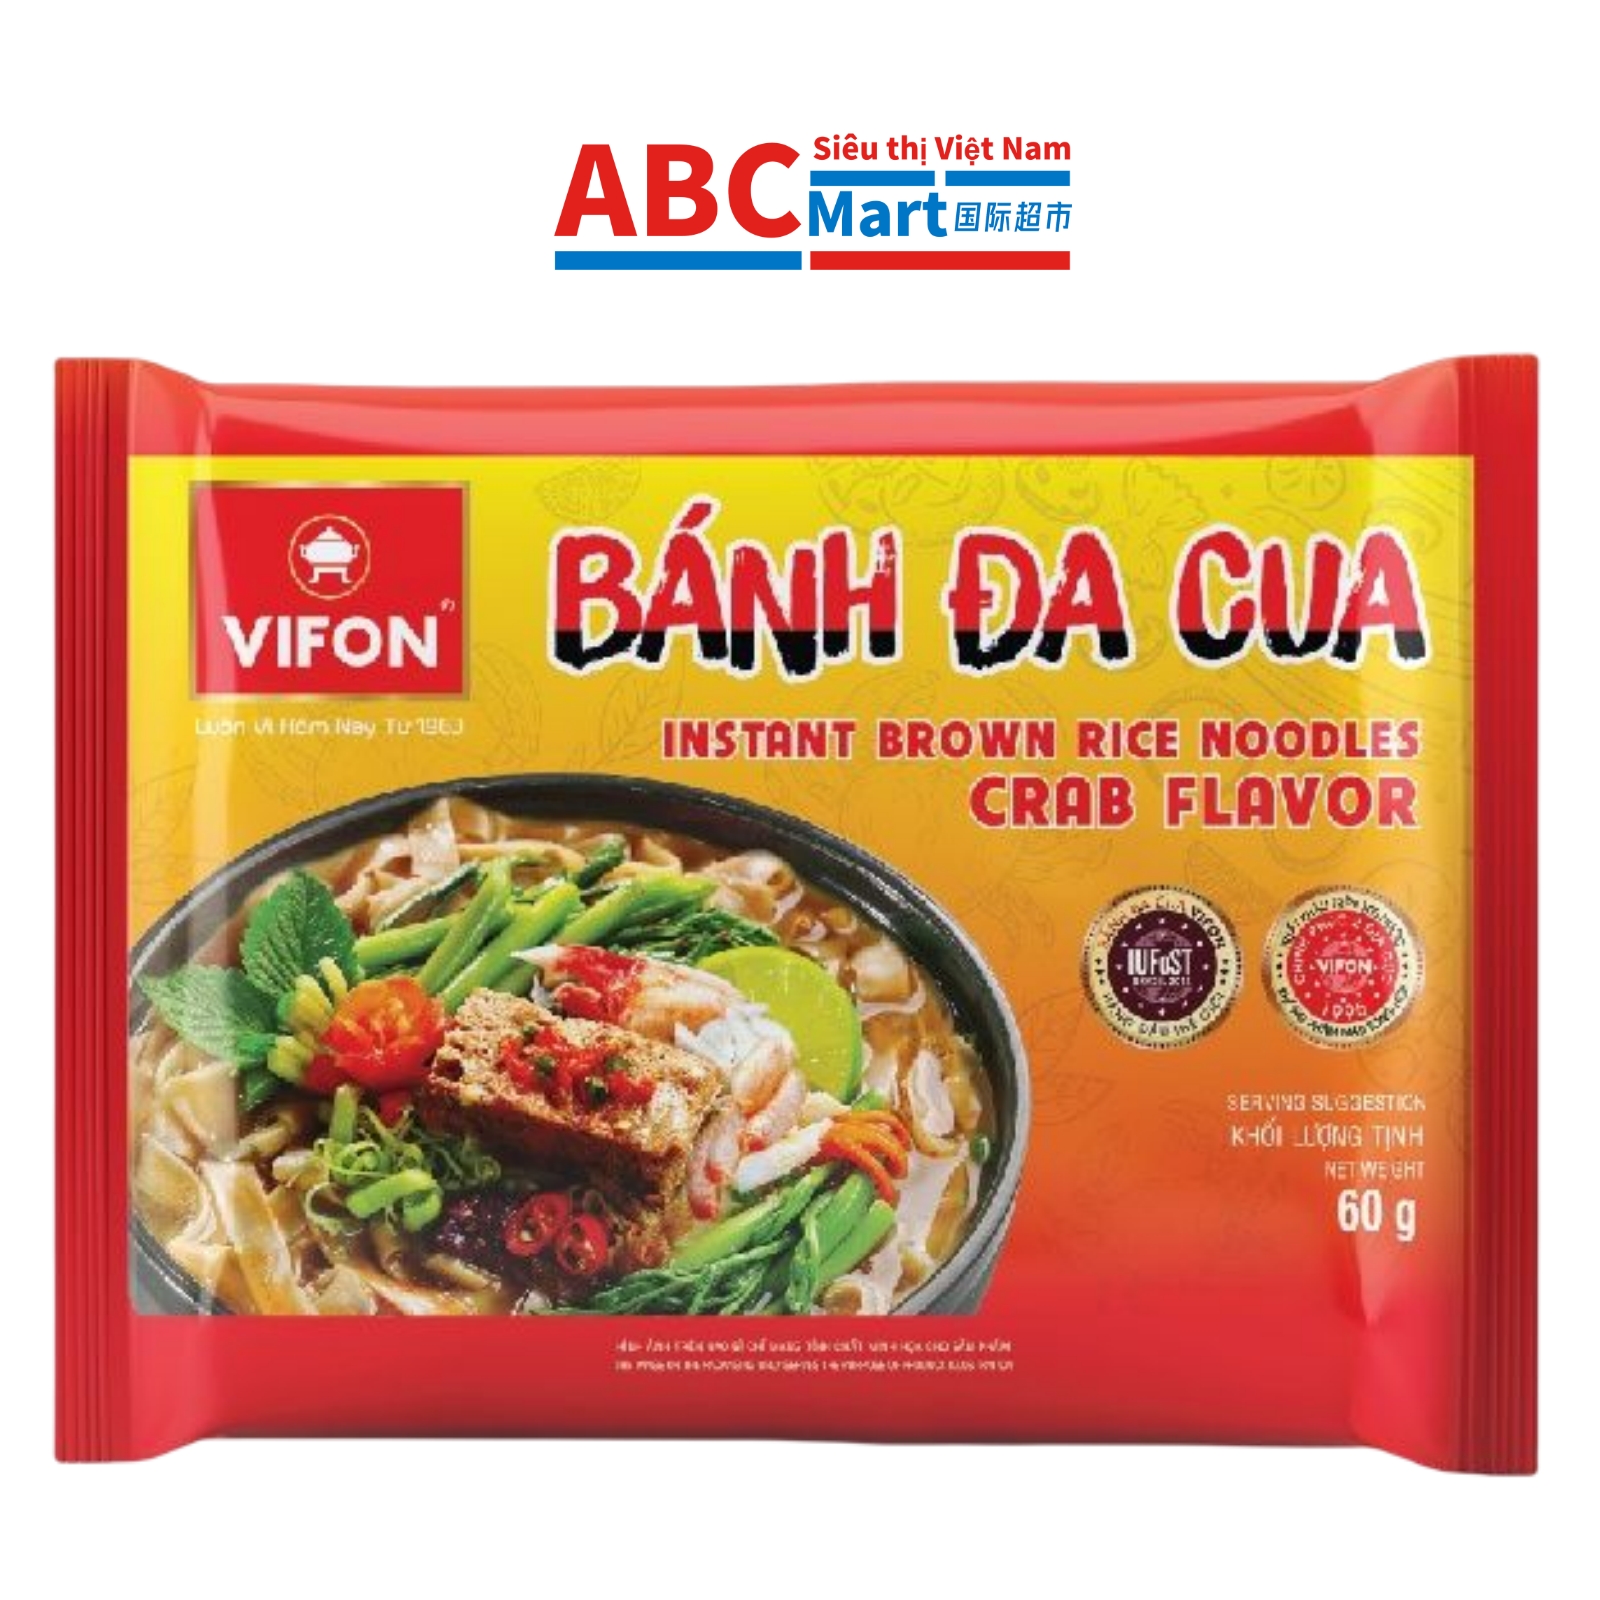 【Việt Nam- Bánh Đa Cua VIFON 60g 】蟹仔河粉-ABCMart 国际超市